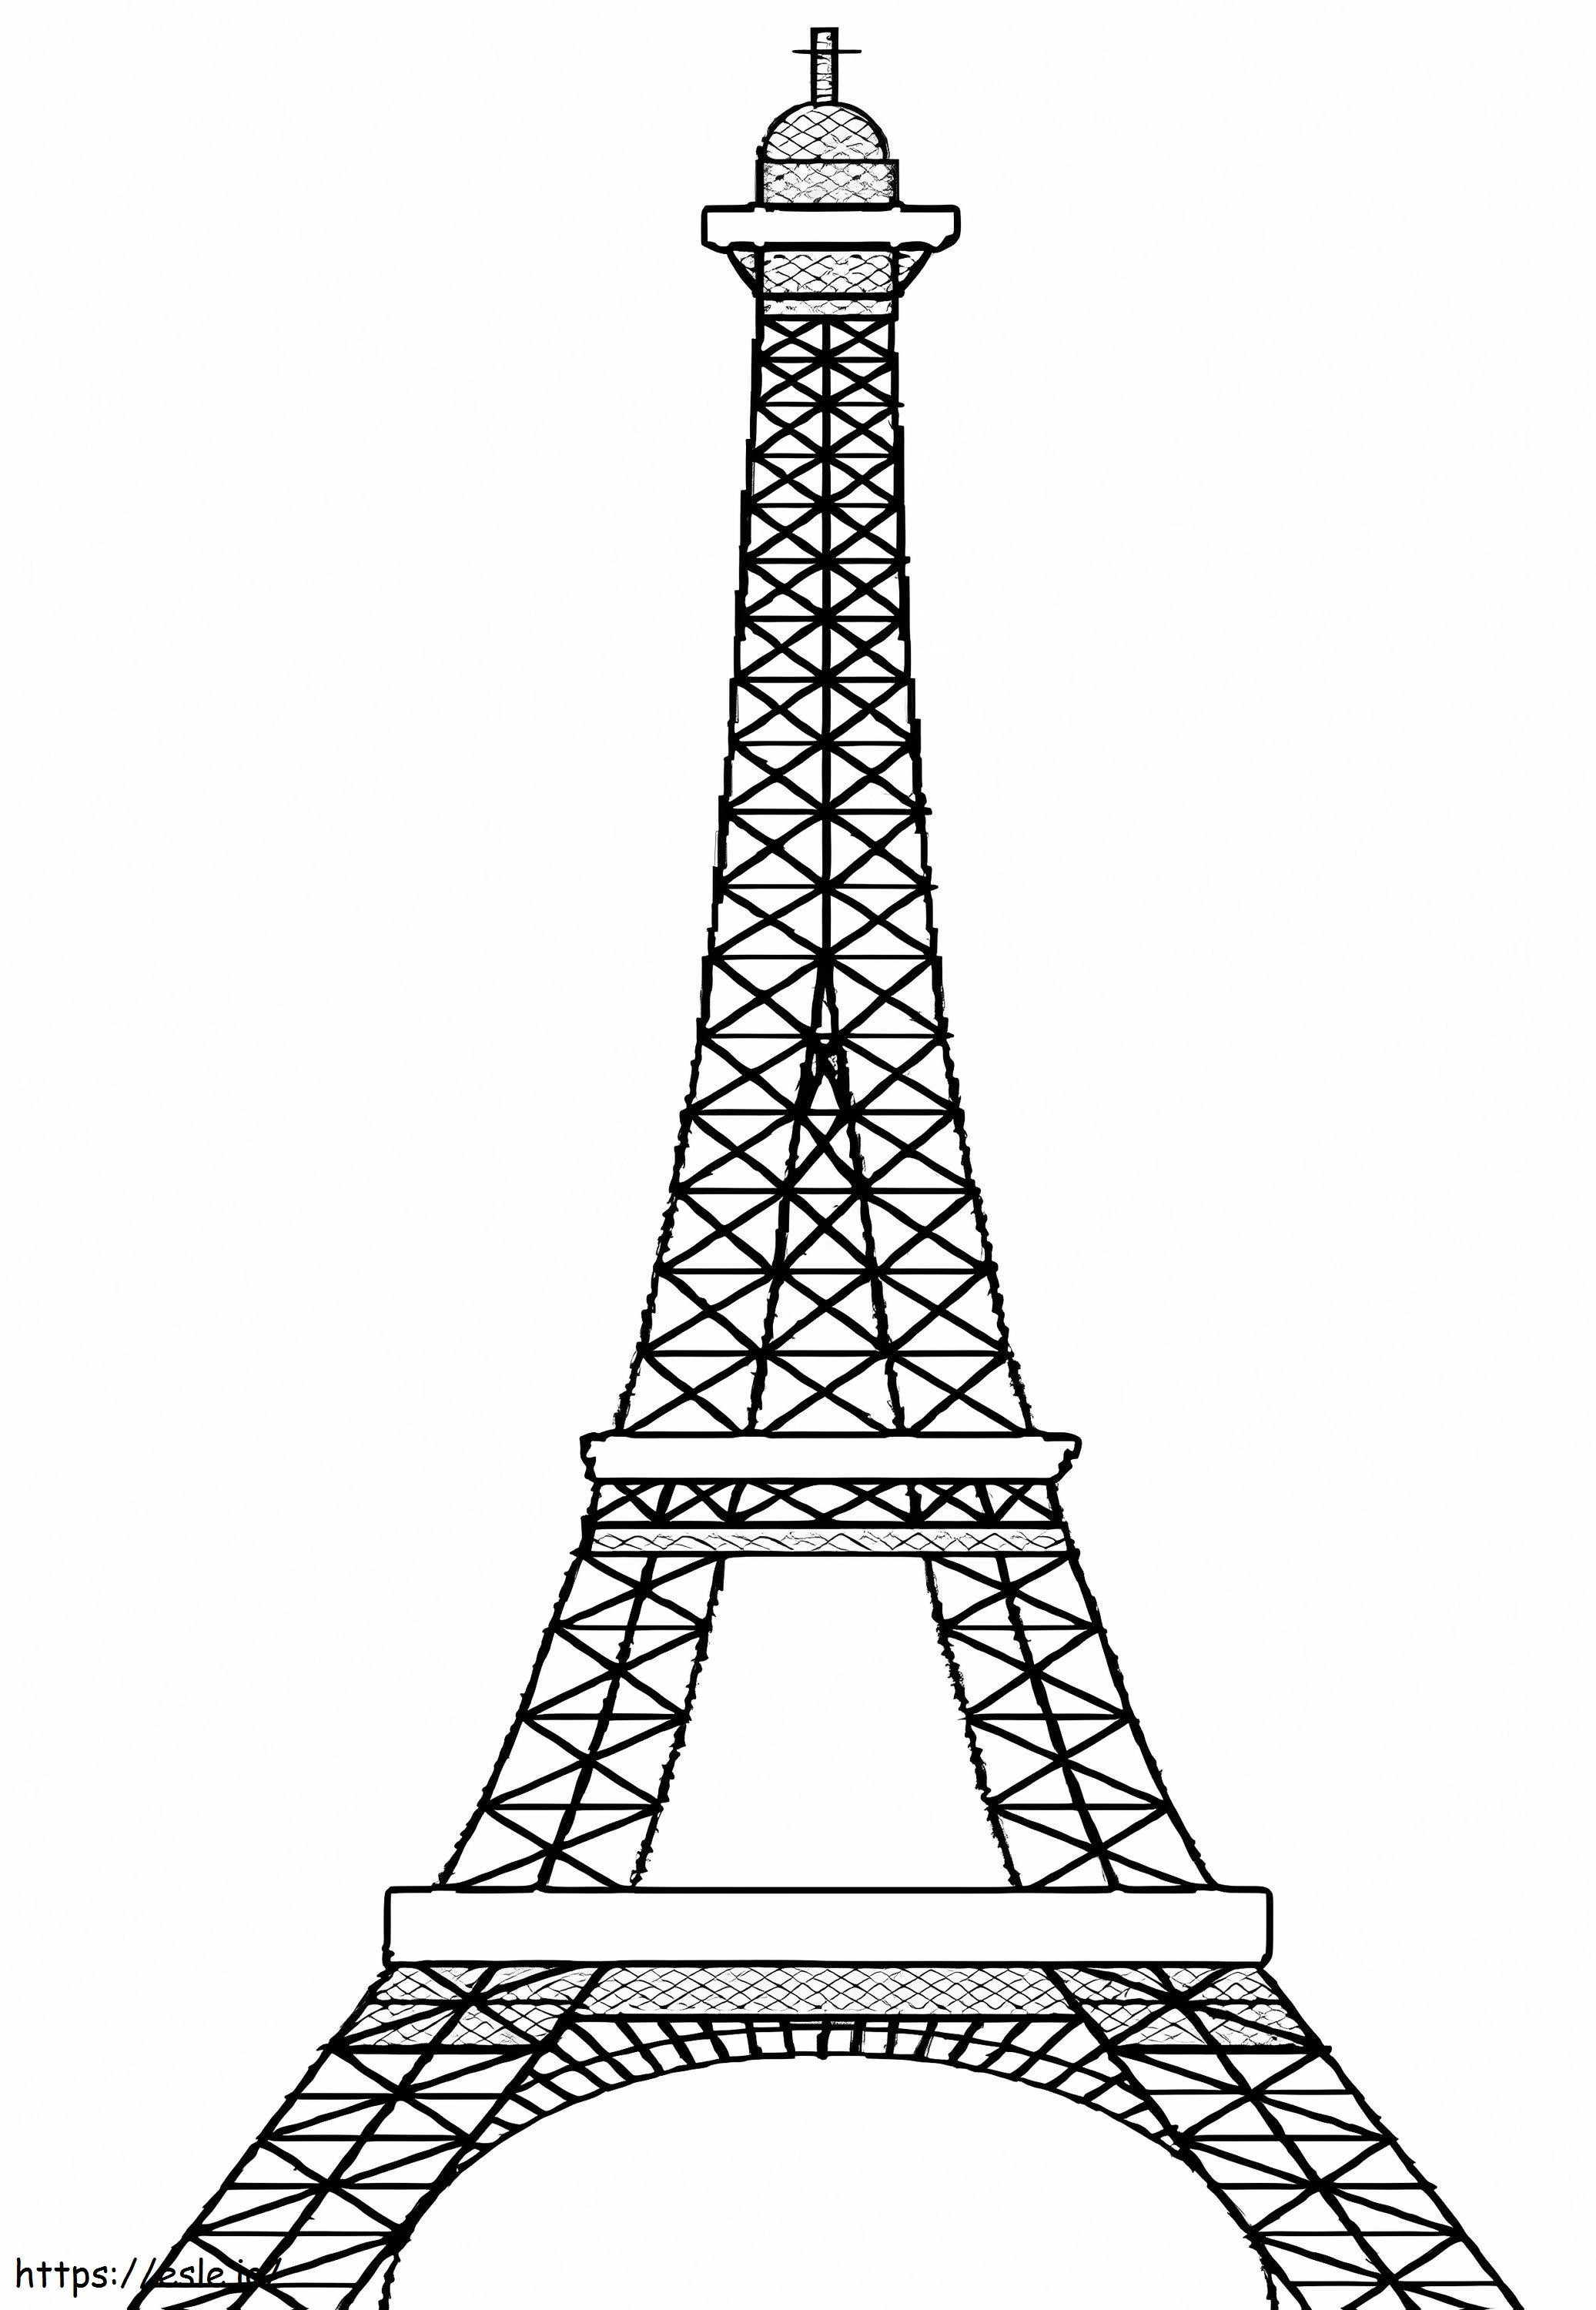 Paris Şehrindeki Büyük Eyfel Kulesi boyama